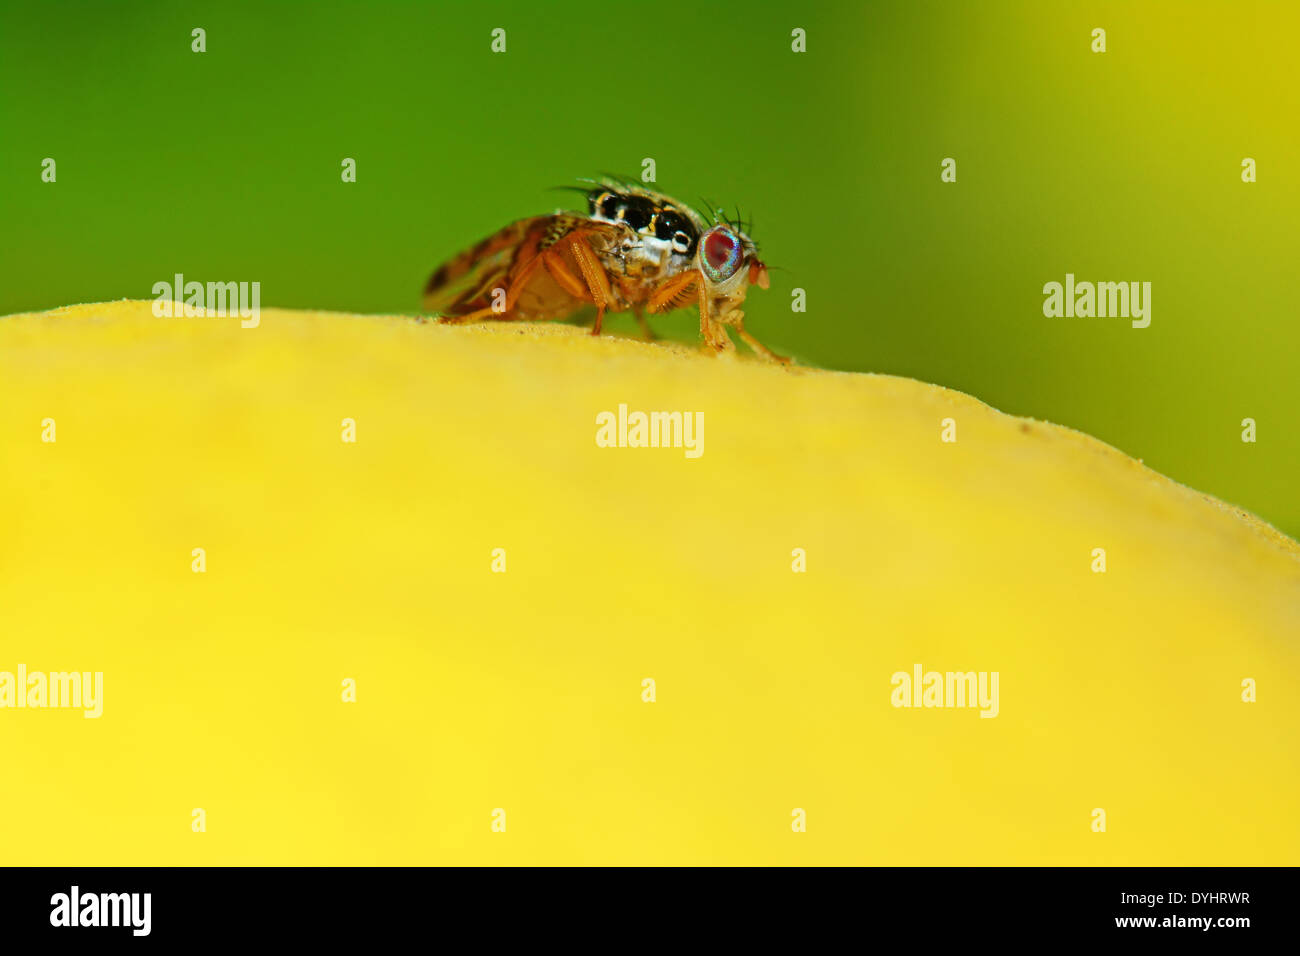 Fruit fly on a lemon Stock Photo